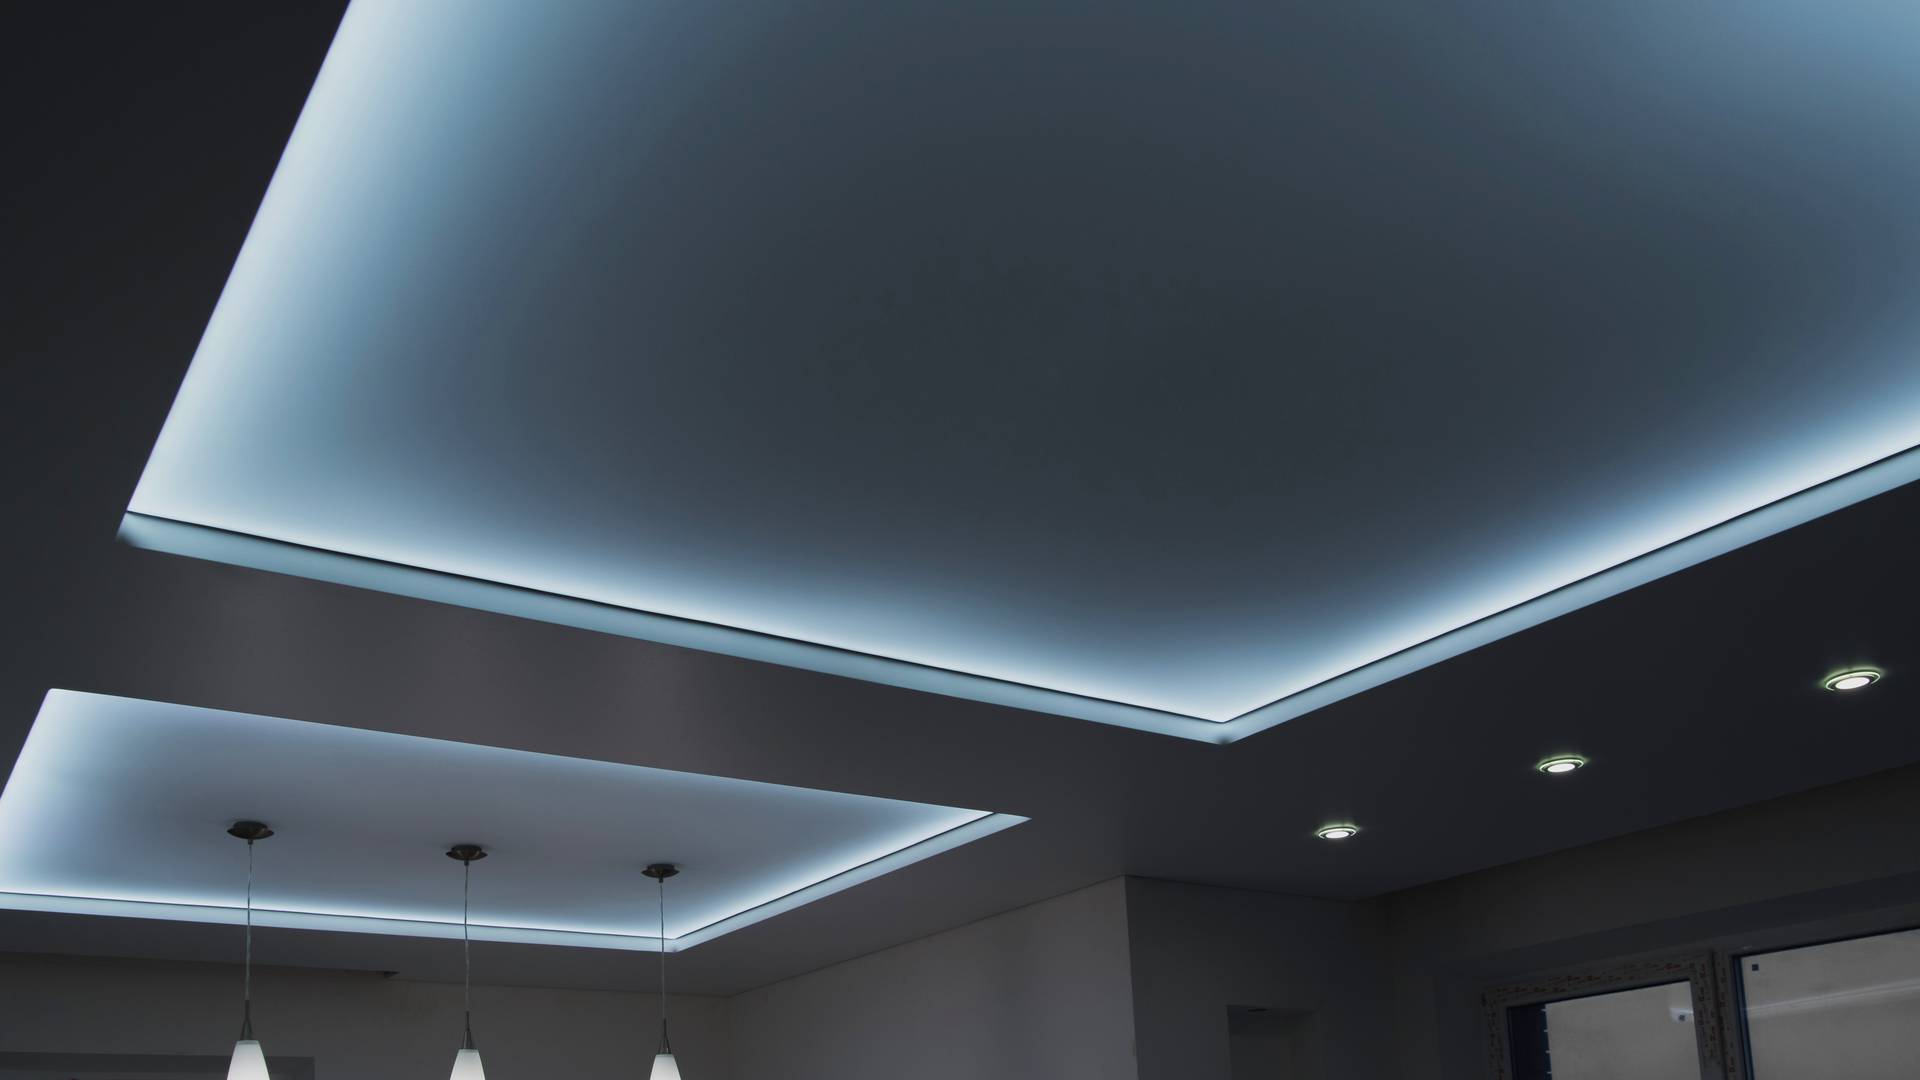 sufit napinany z oświetleniem LED w nowoczesnym salonie